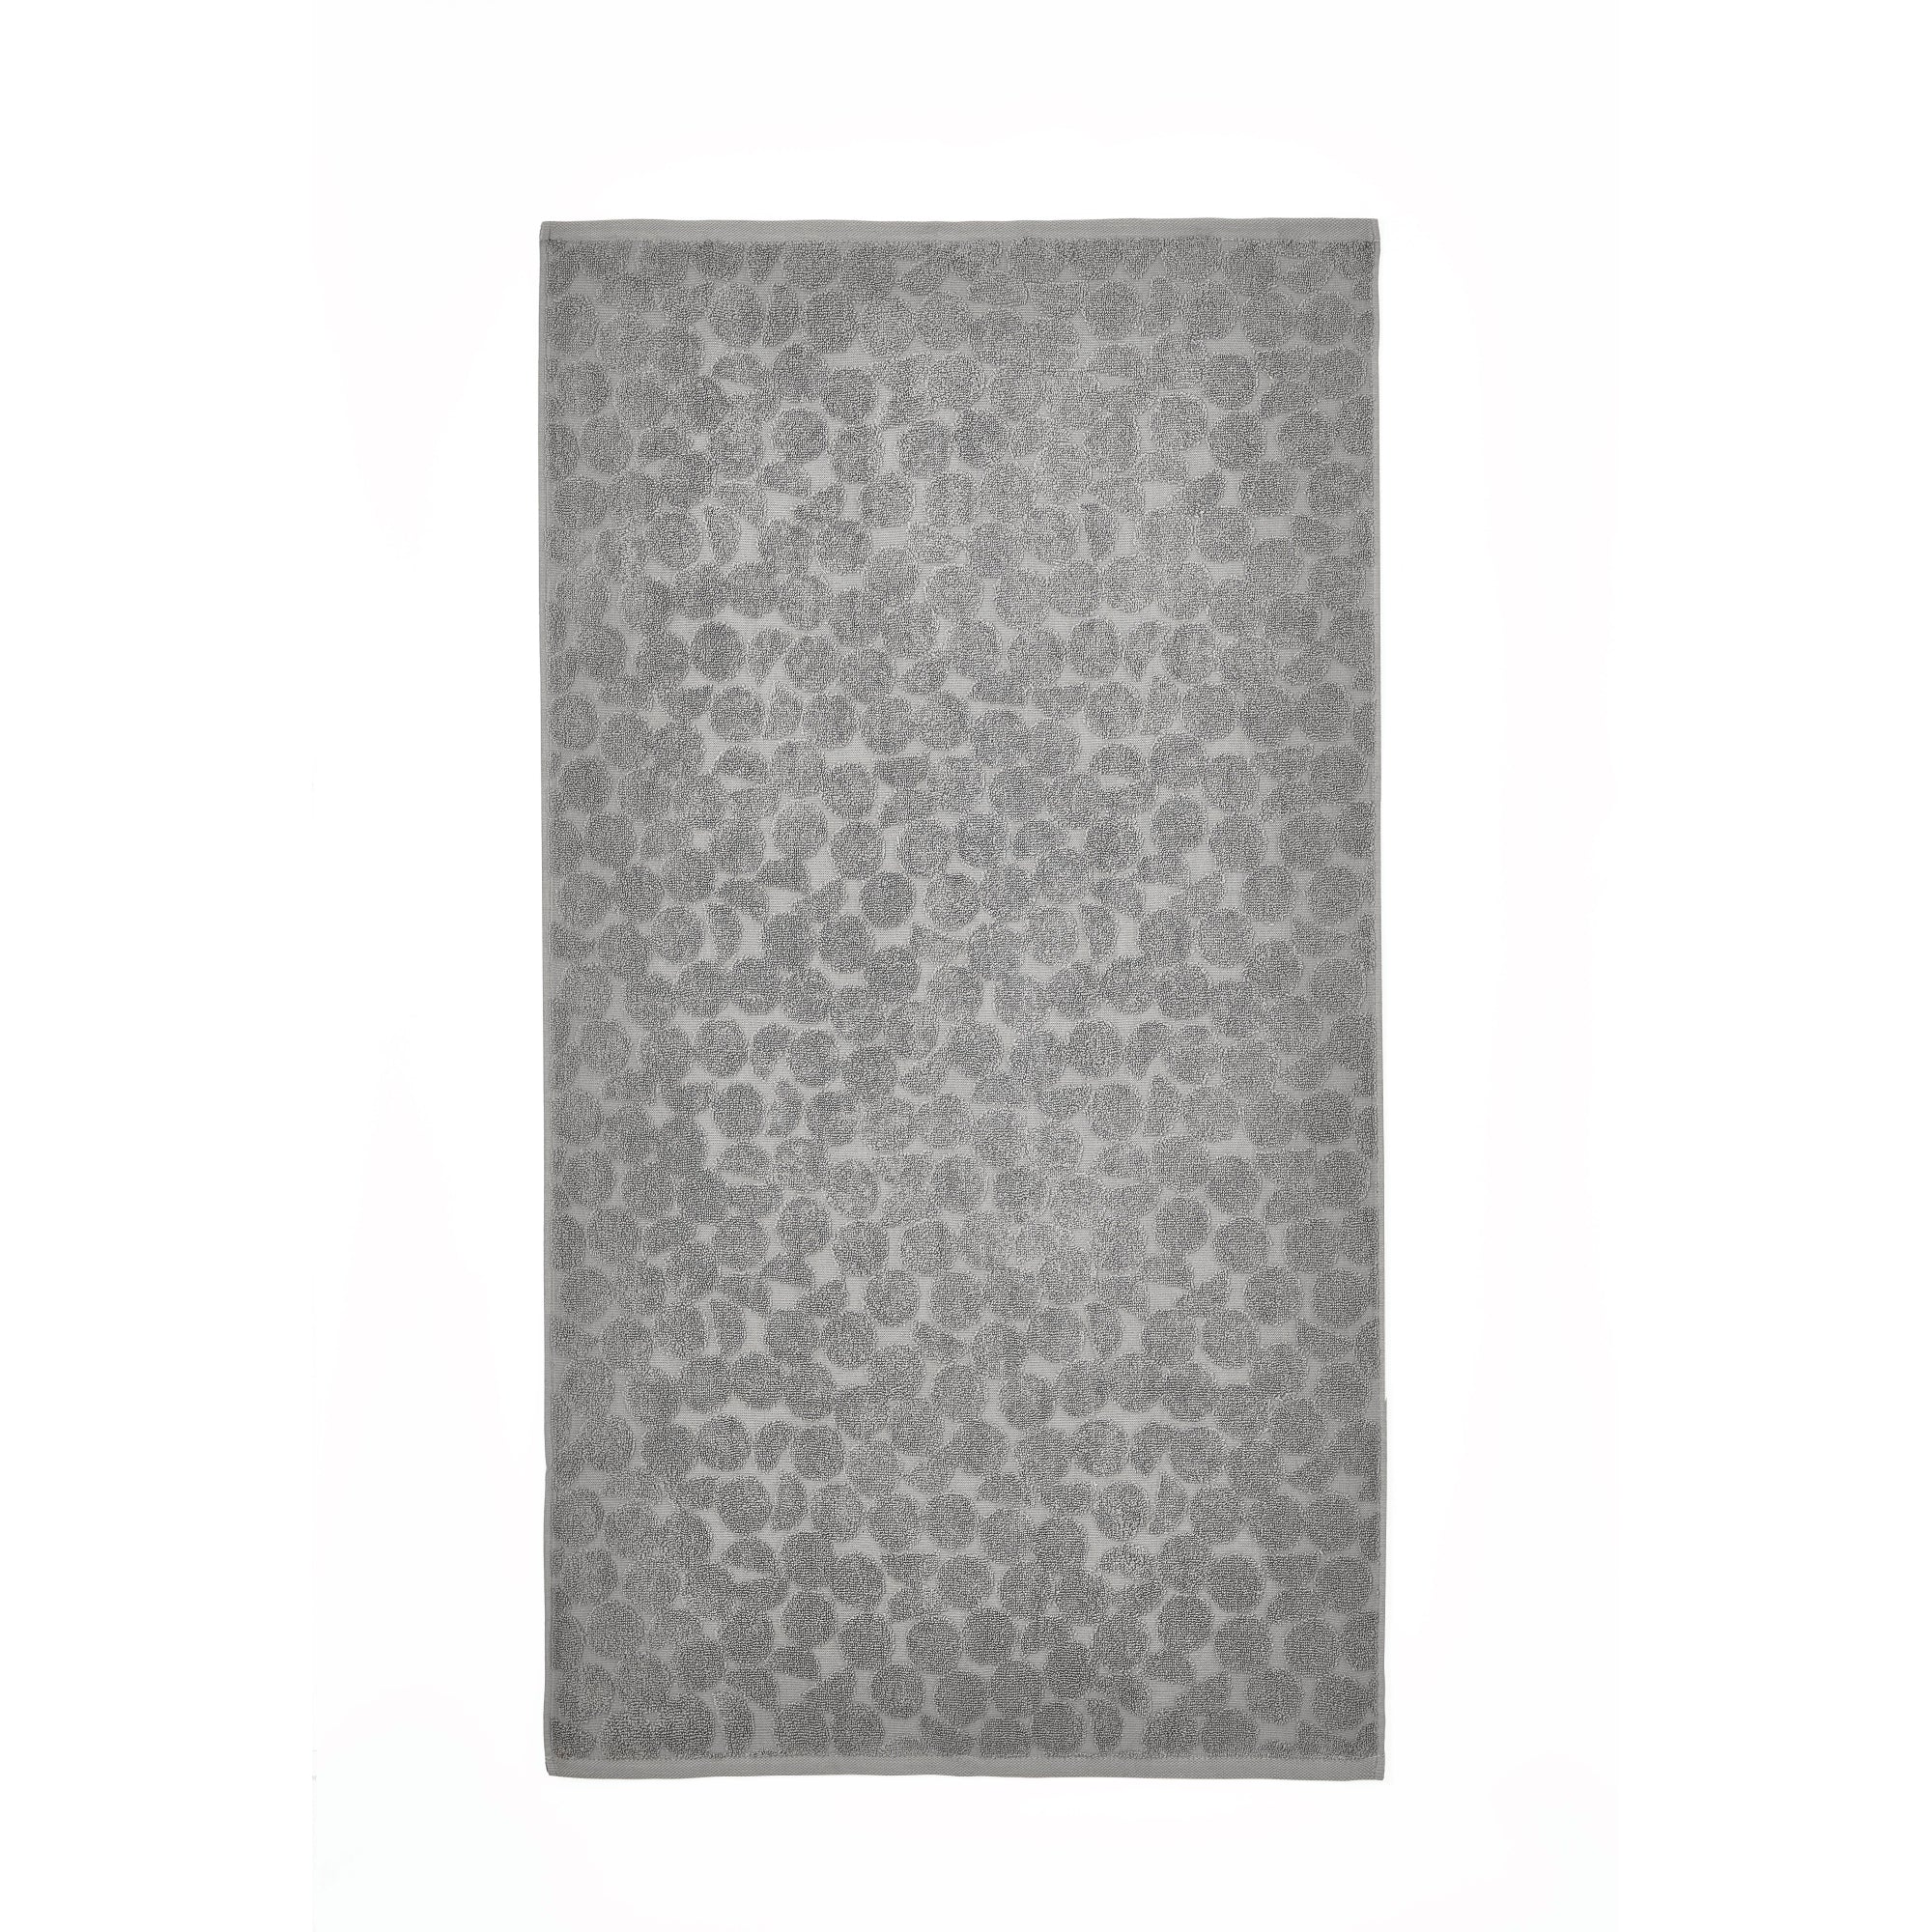 Bath Sheet Ingo by Fusion in Grey